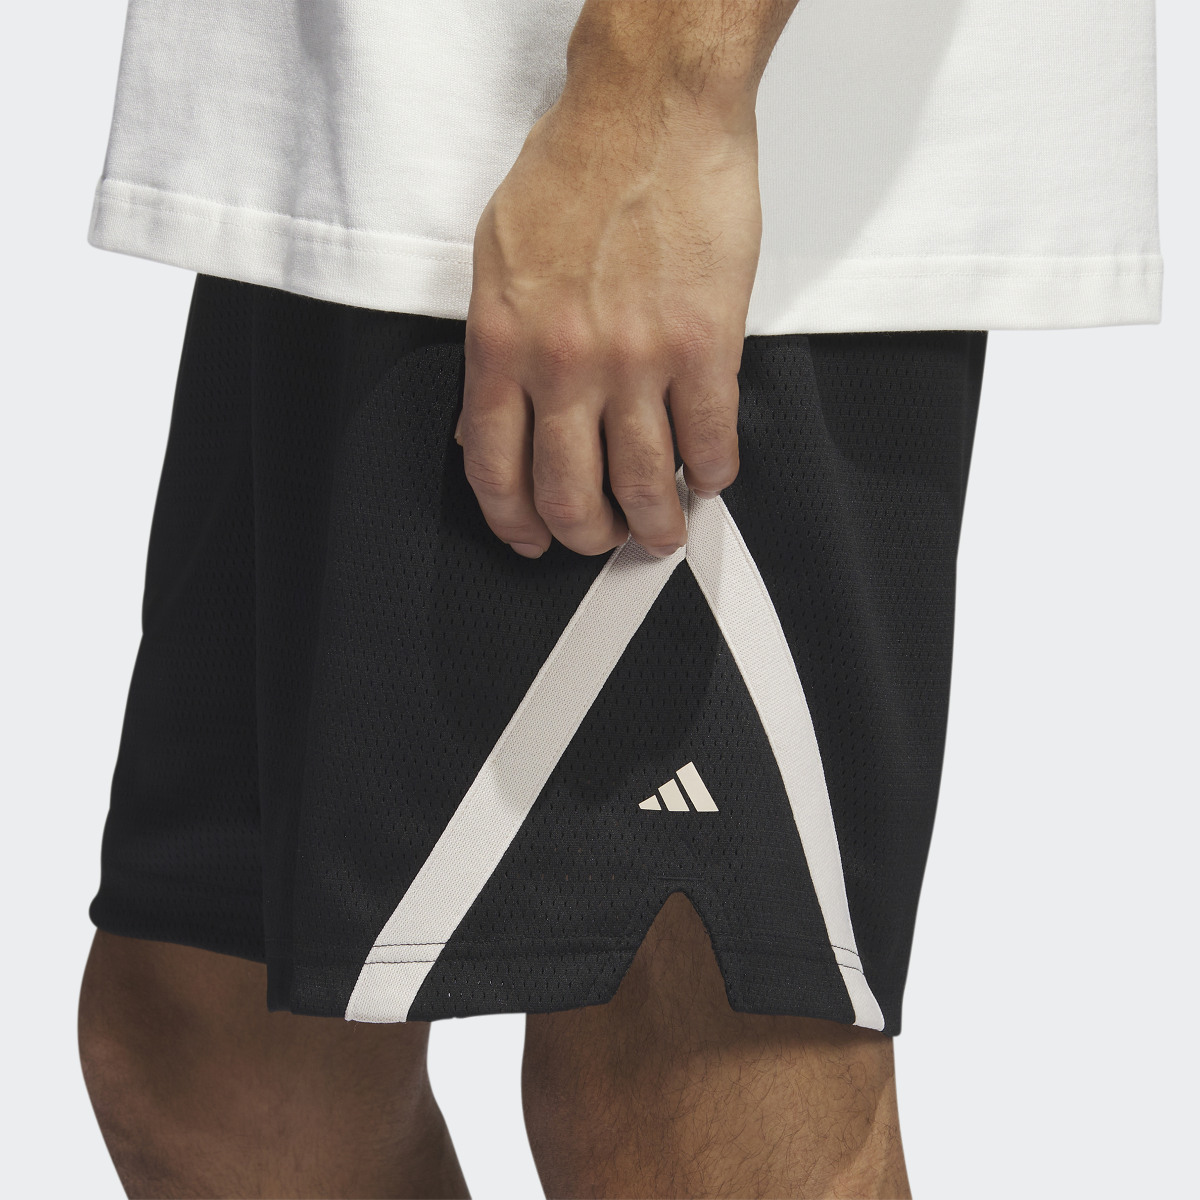 Adidas Select Summer Shorts. 5